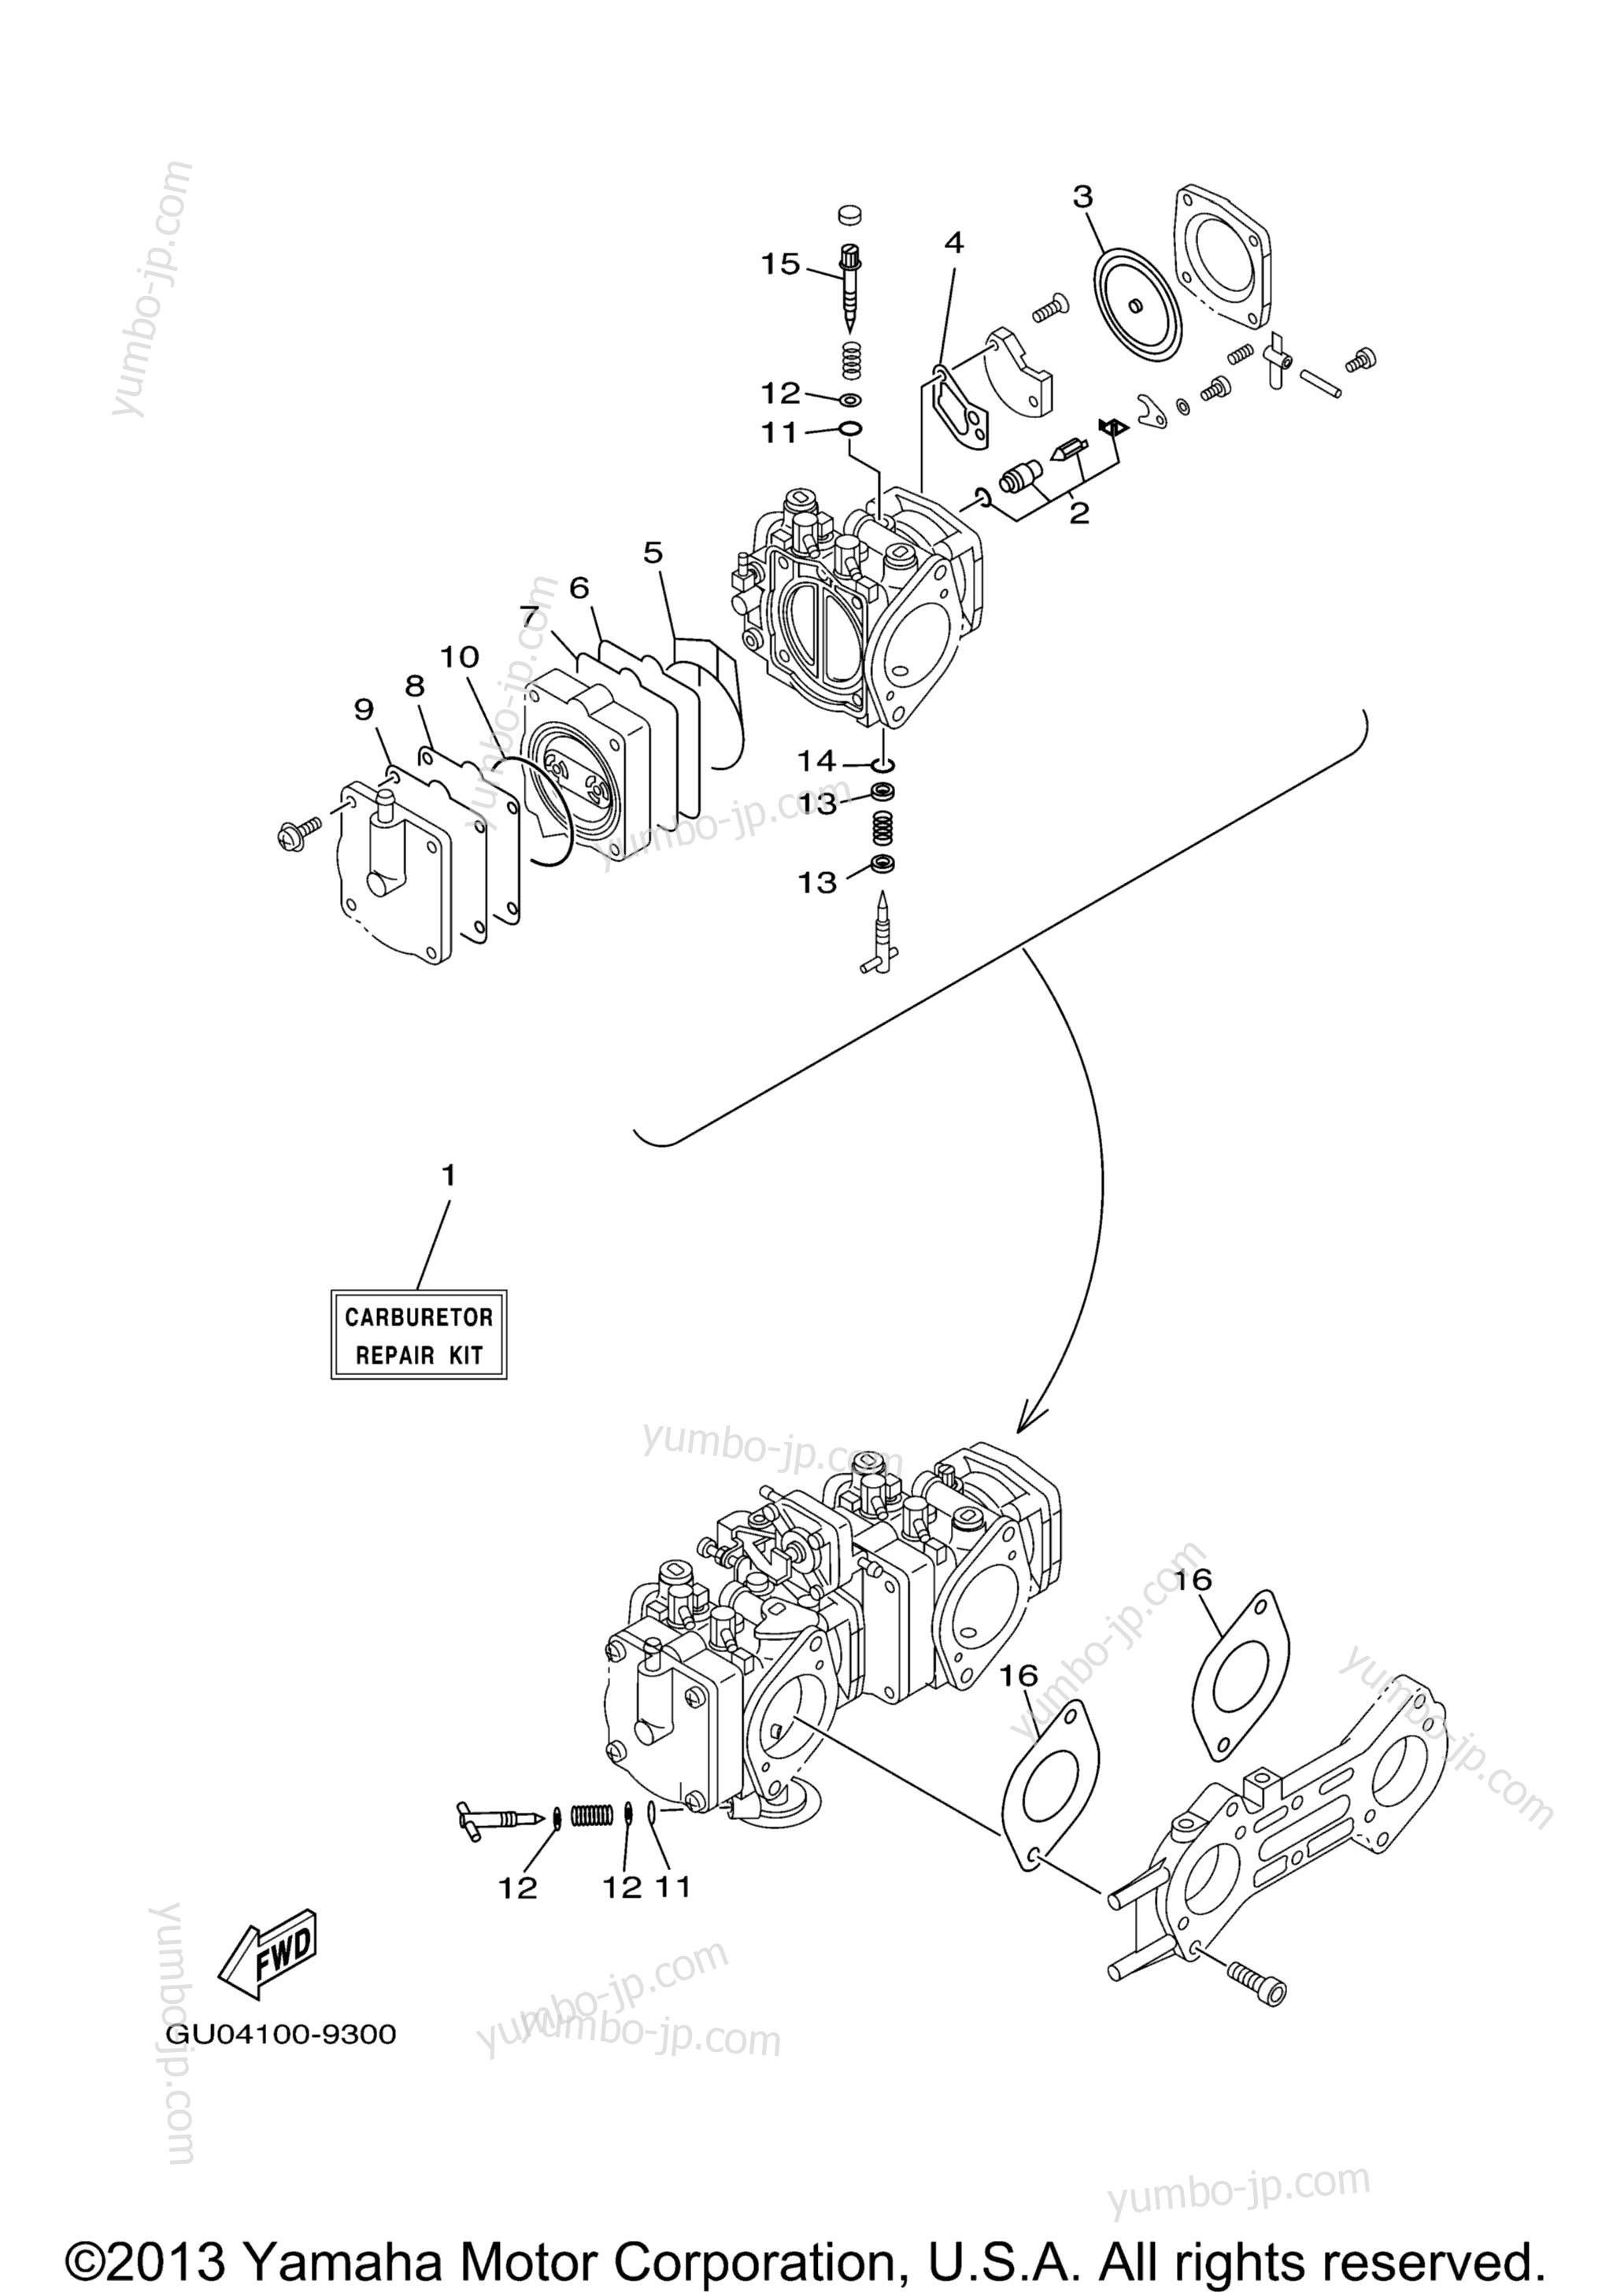 Repair Kit 2 для гидроциклов YAMAHA XLT800 (XA800AA) 2002 г.